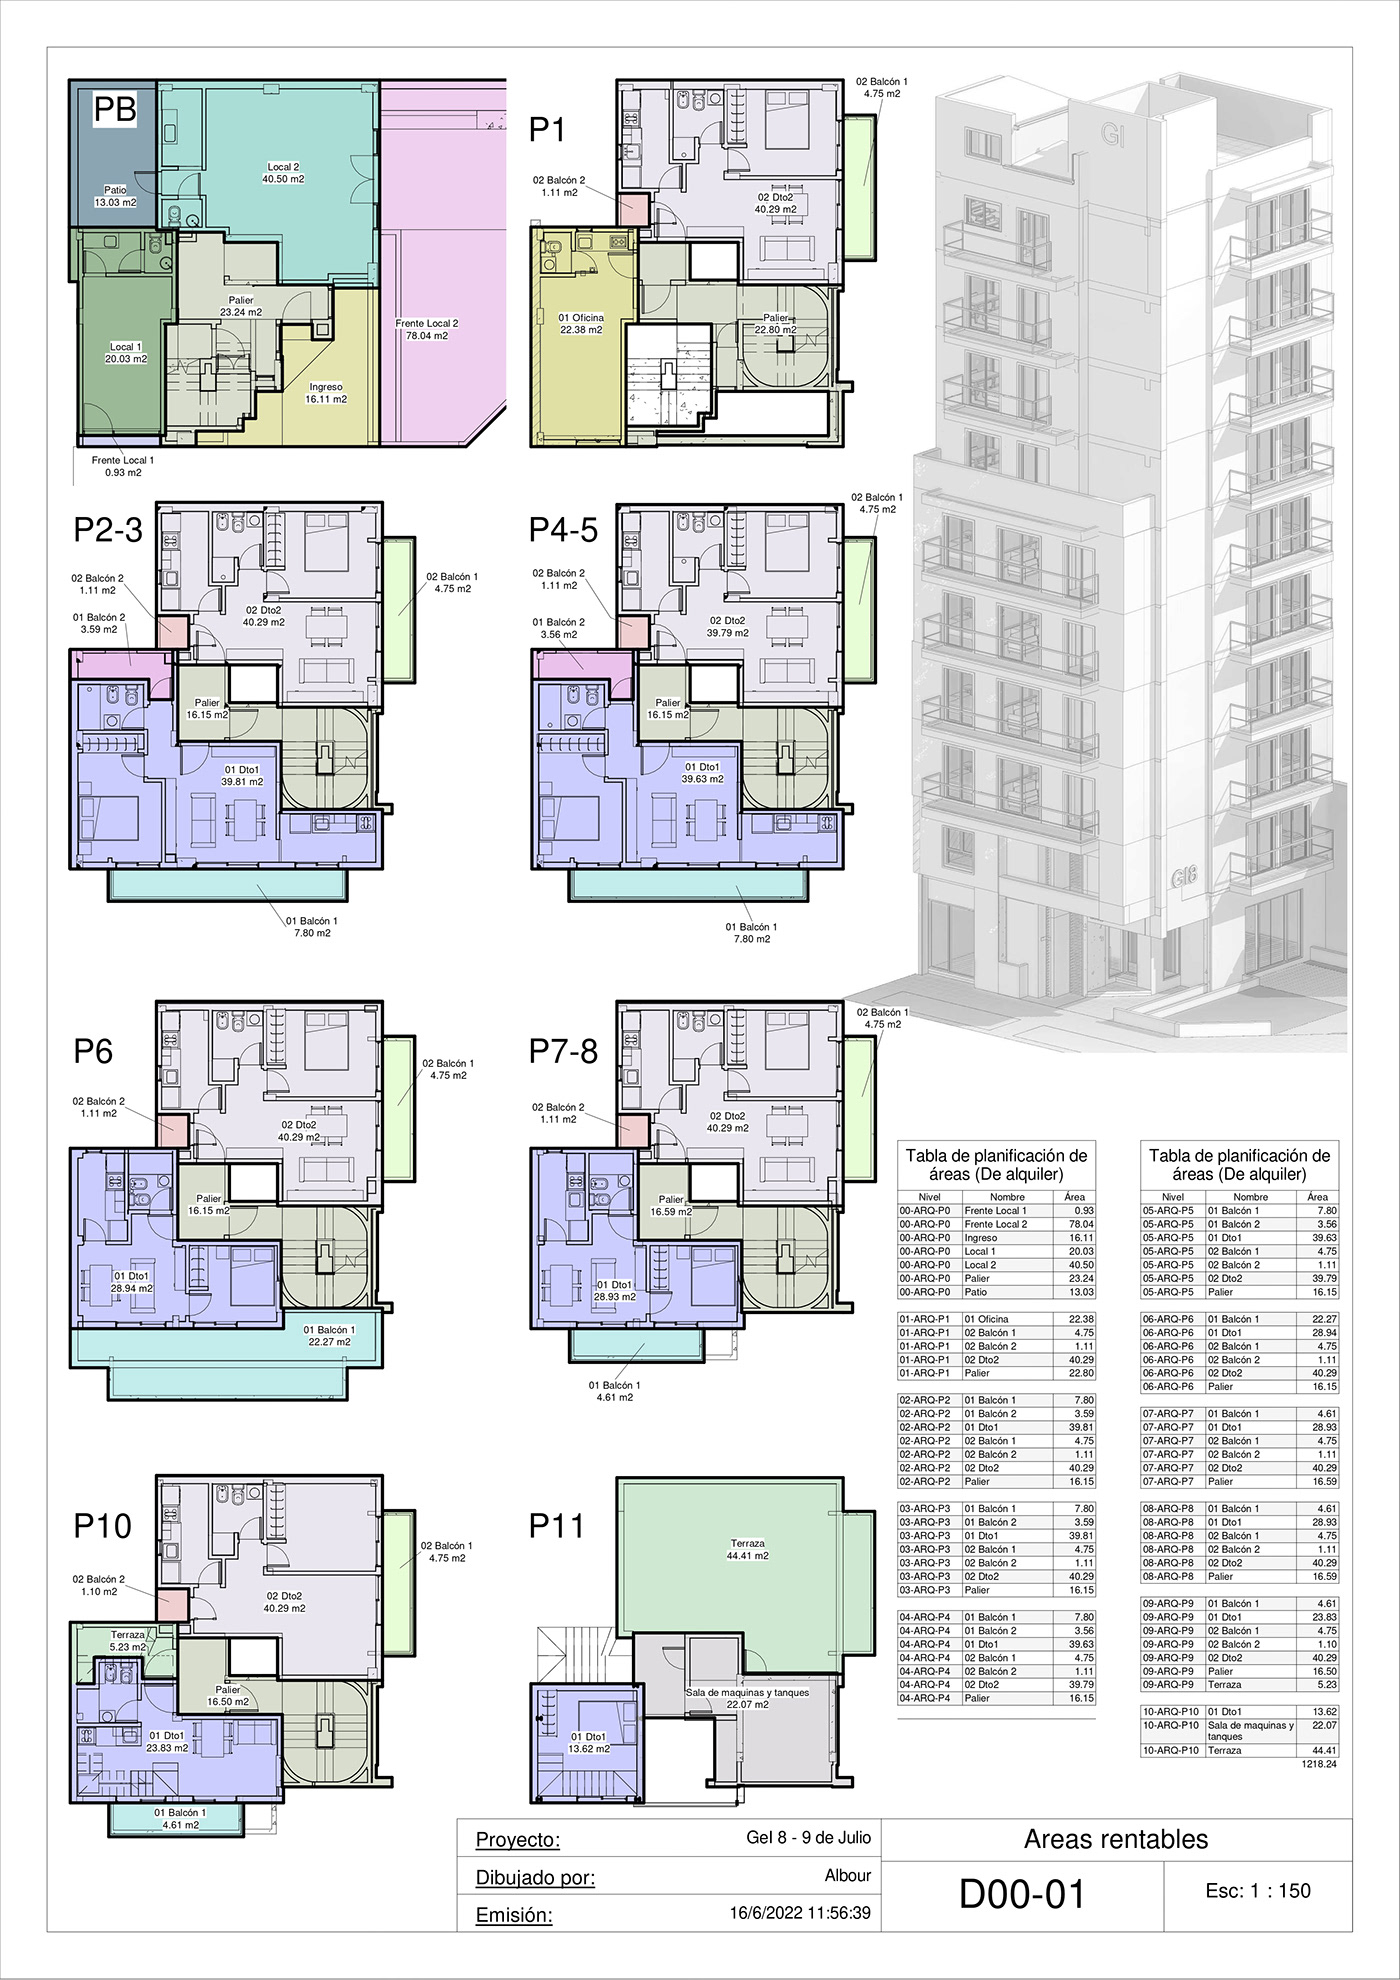 3D architecture bim modeling services construction edificio de viviendas Revit Architecture